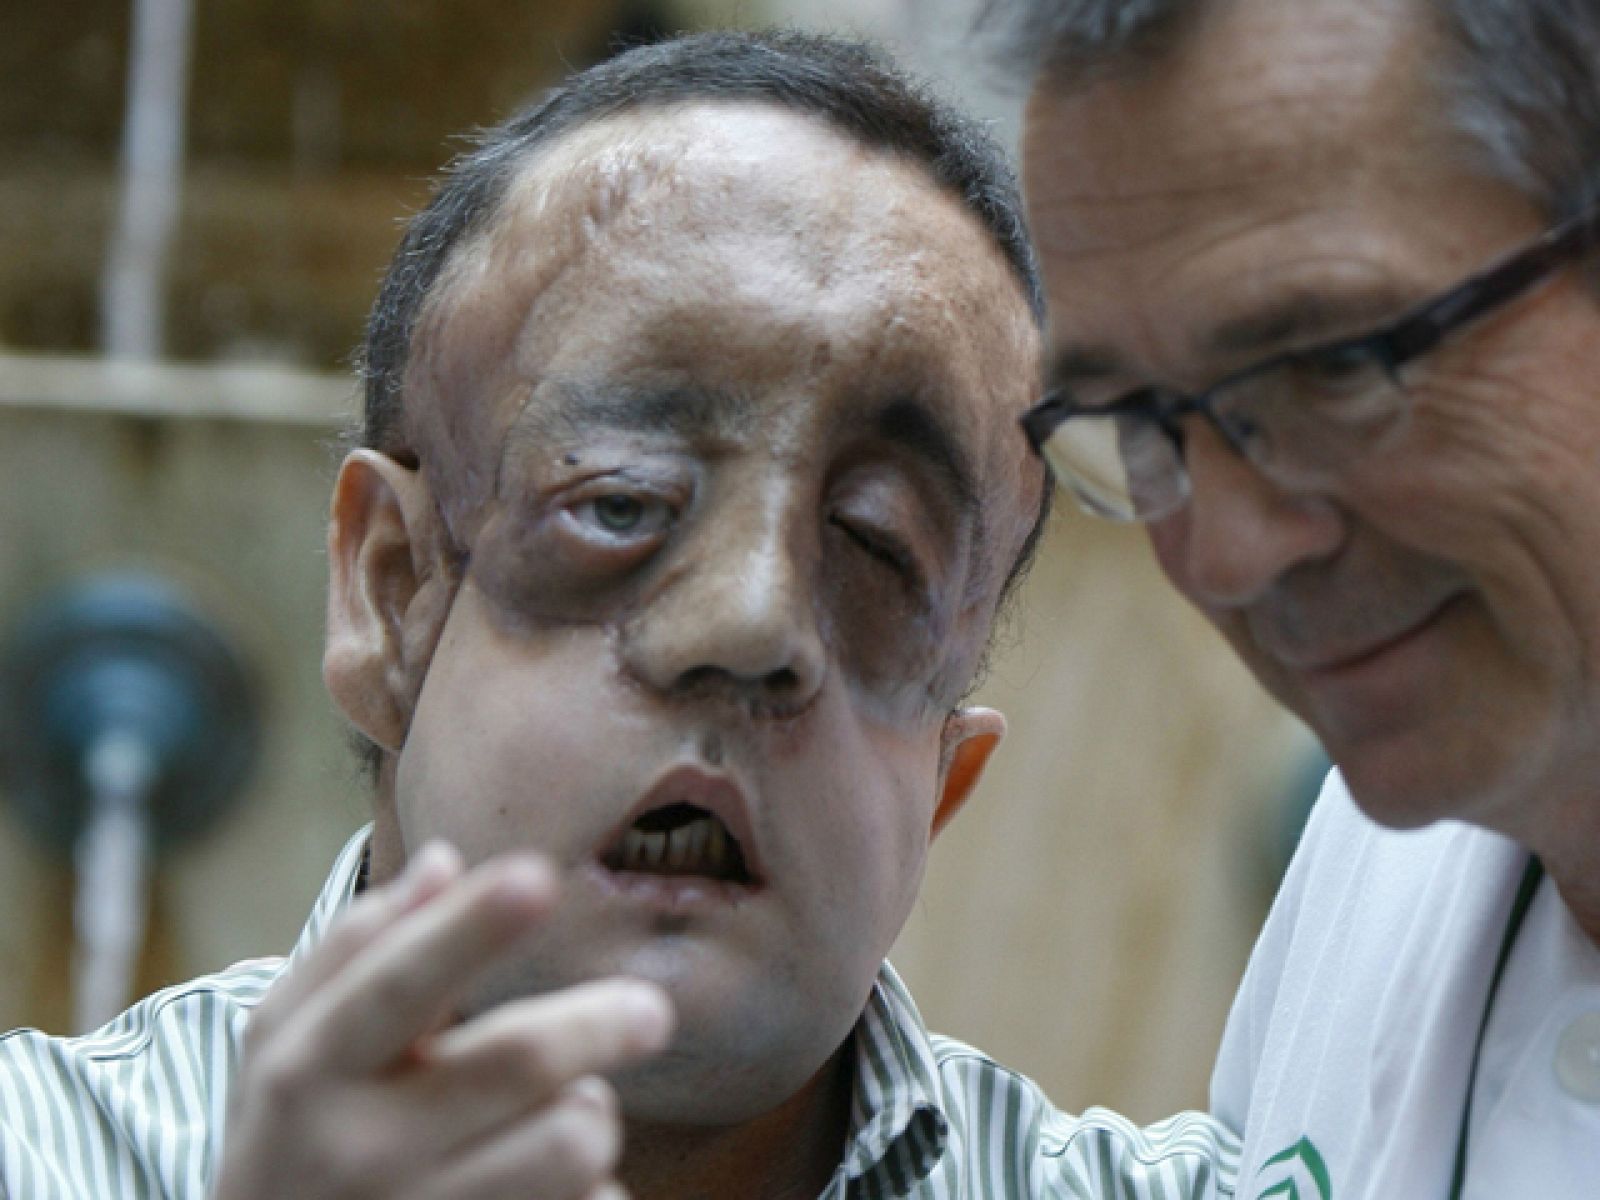 Hoy han dado el alta en el Hospital Virgen del Rocío de Sevilla, al segundo paciente trasplantado de cara en España